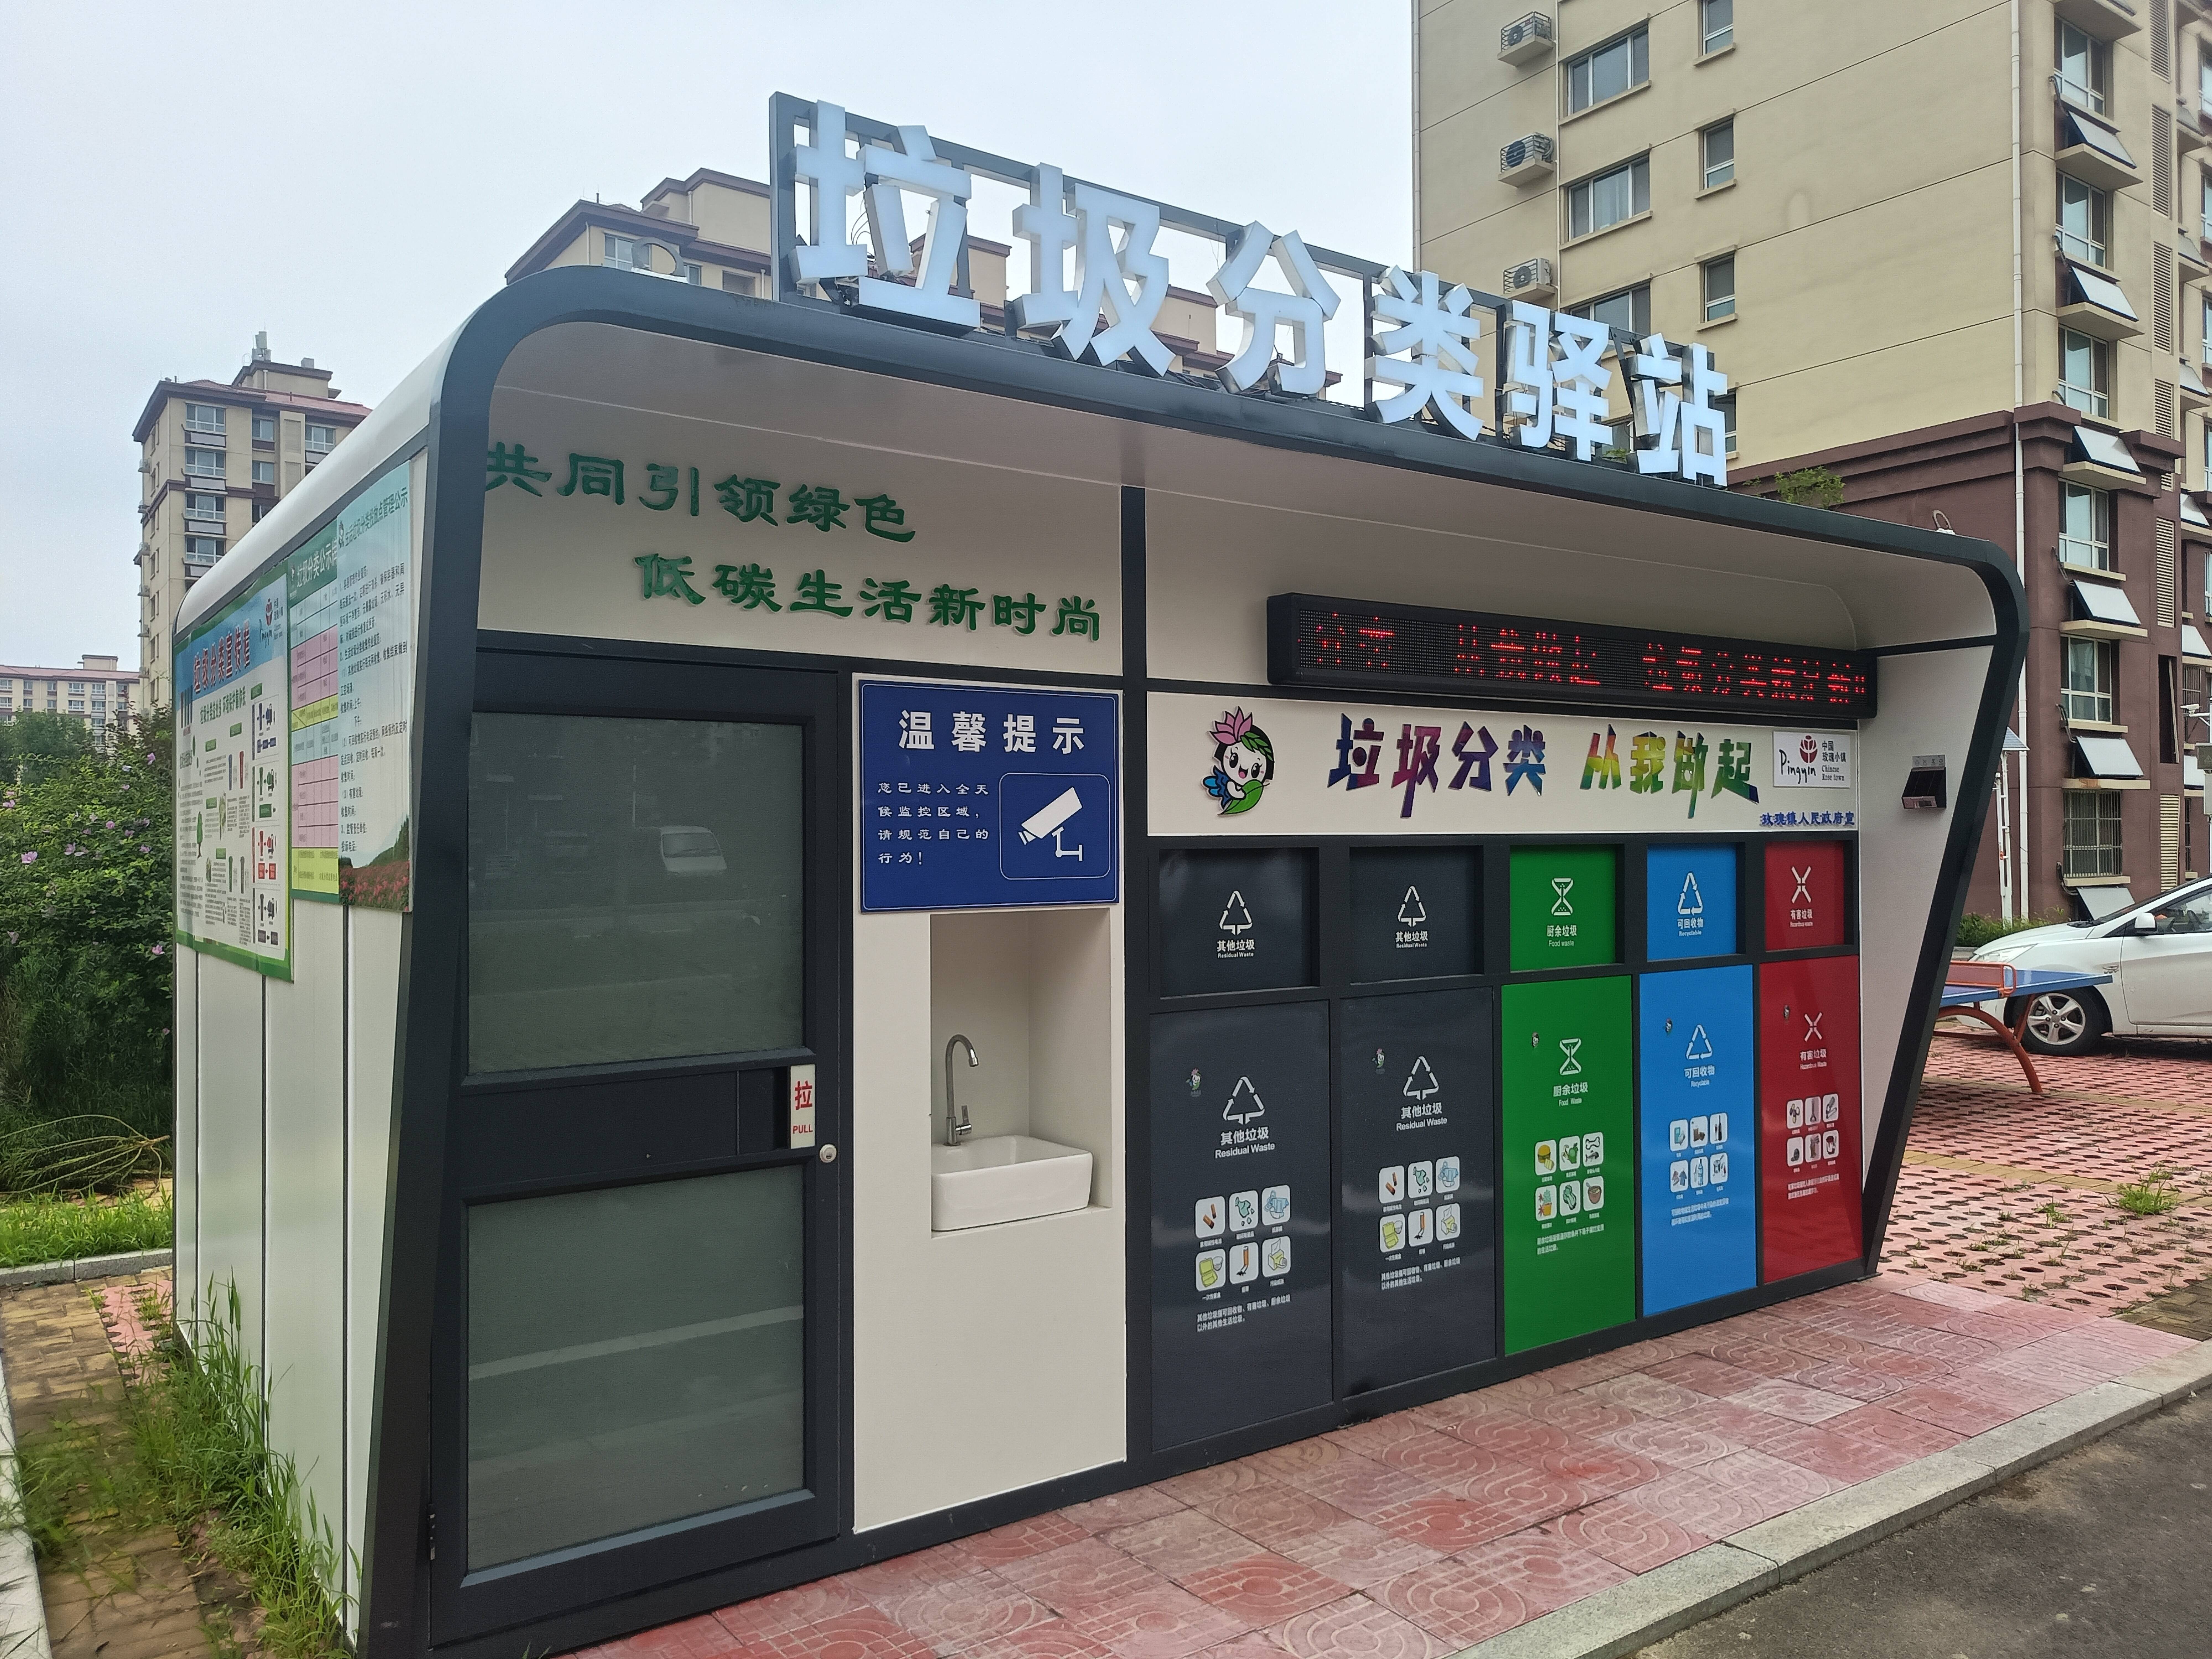 平阴县玫瑰镇首批垃圾分类驿站正式投入使用